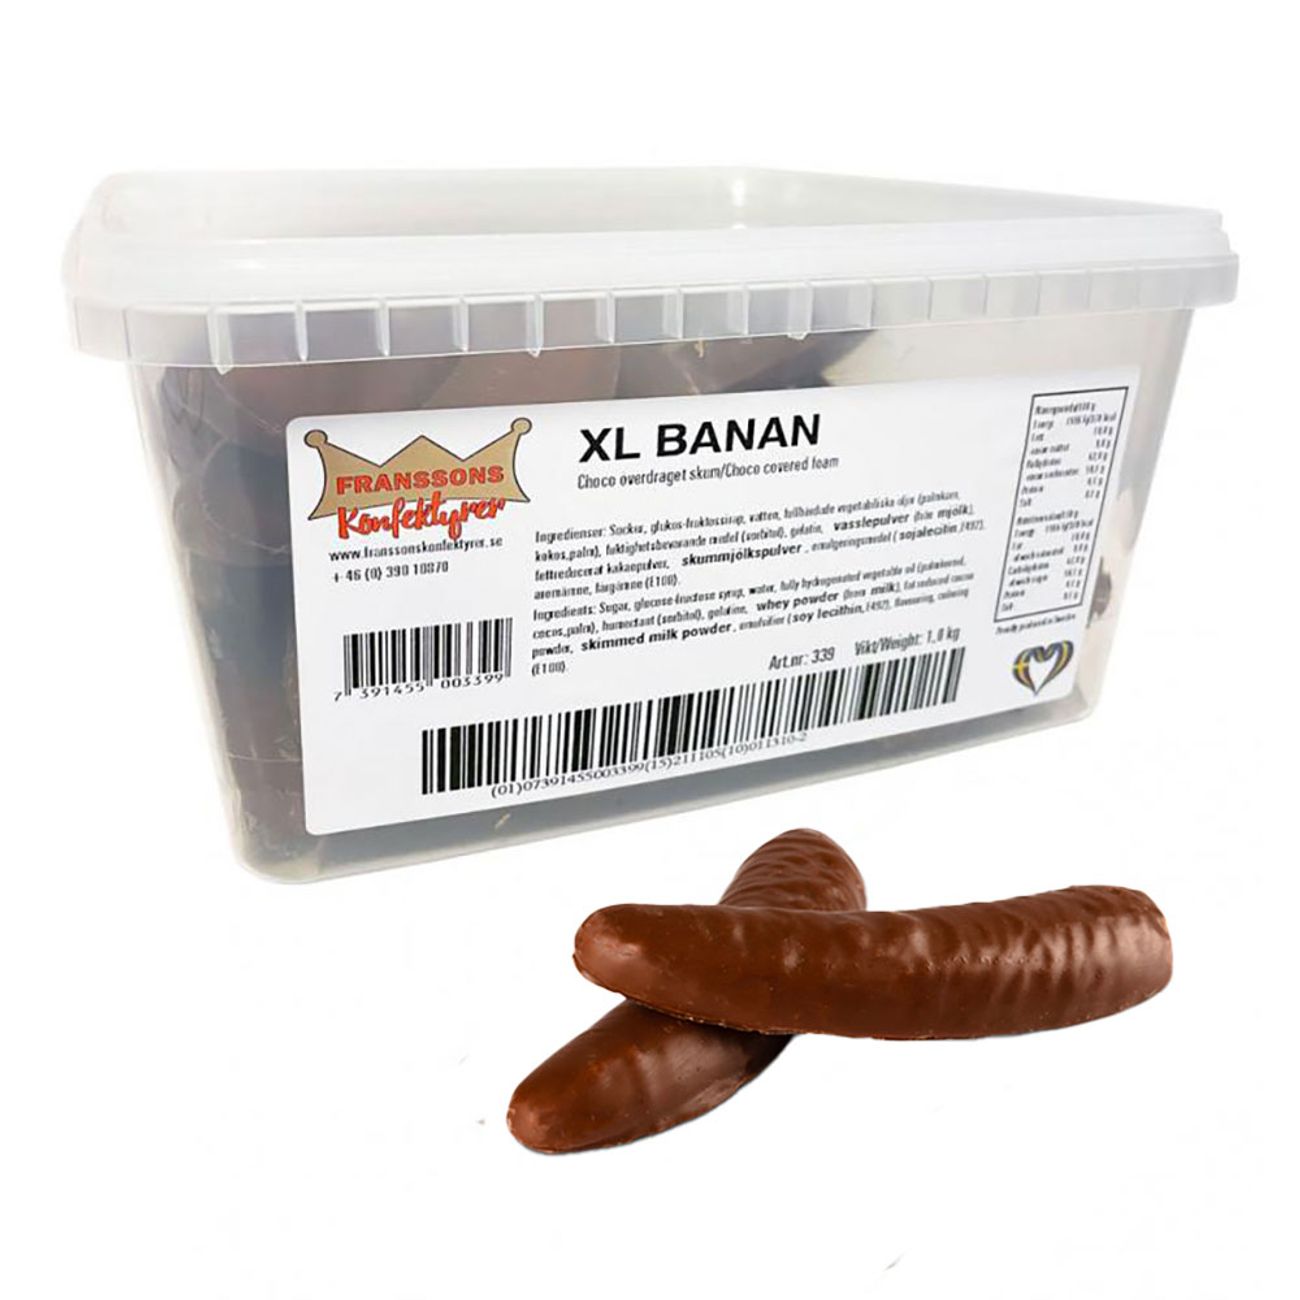 xl-banan-choklad-storpack-83453-1